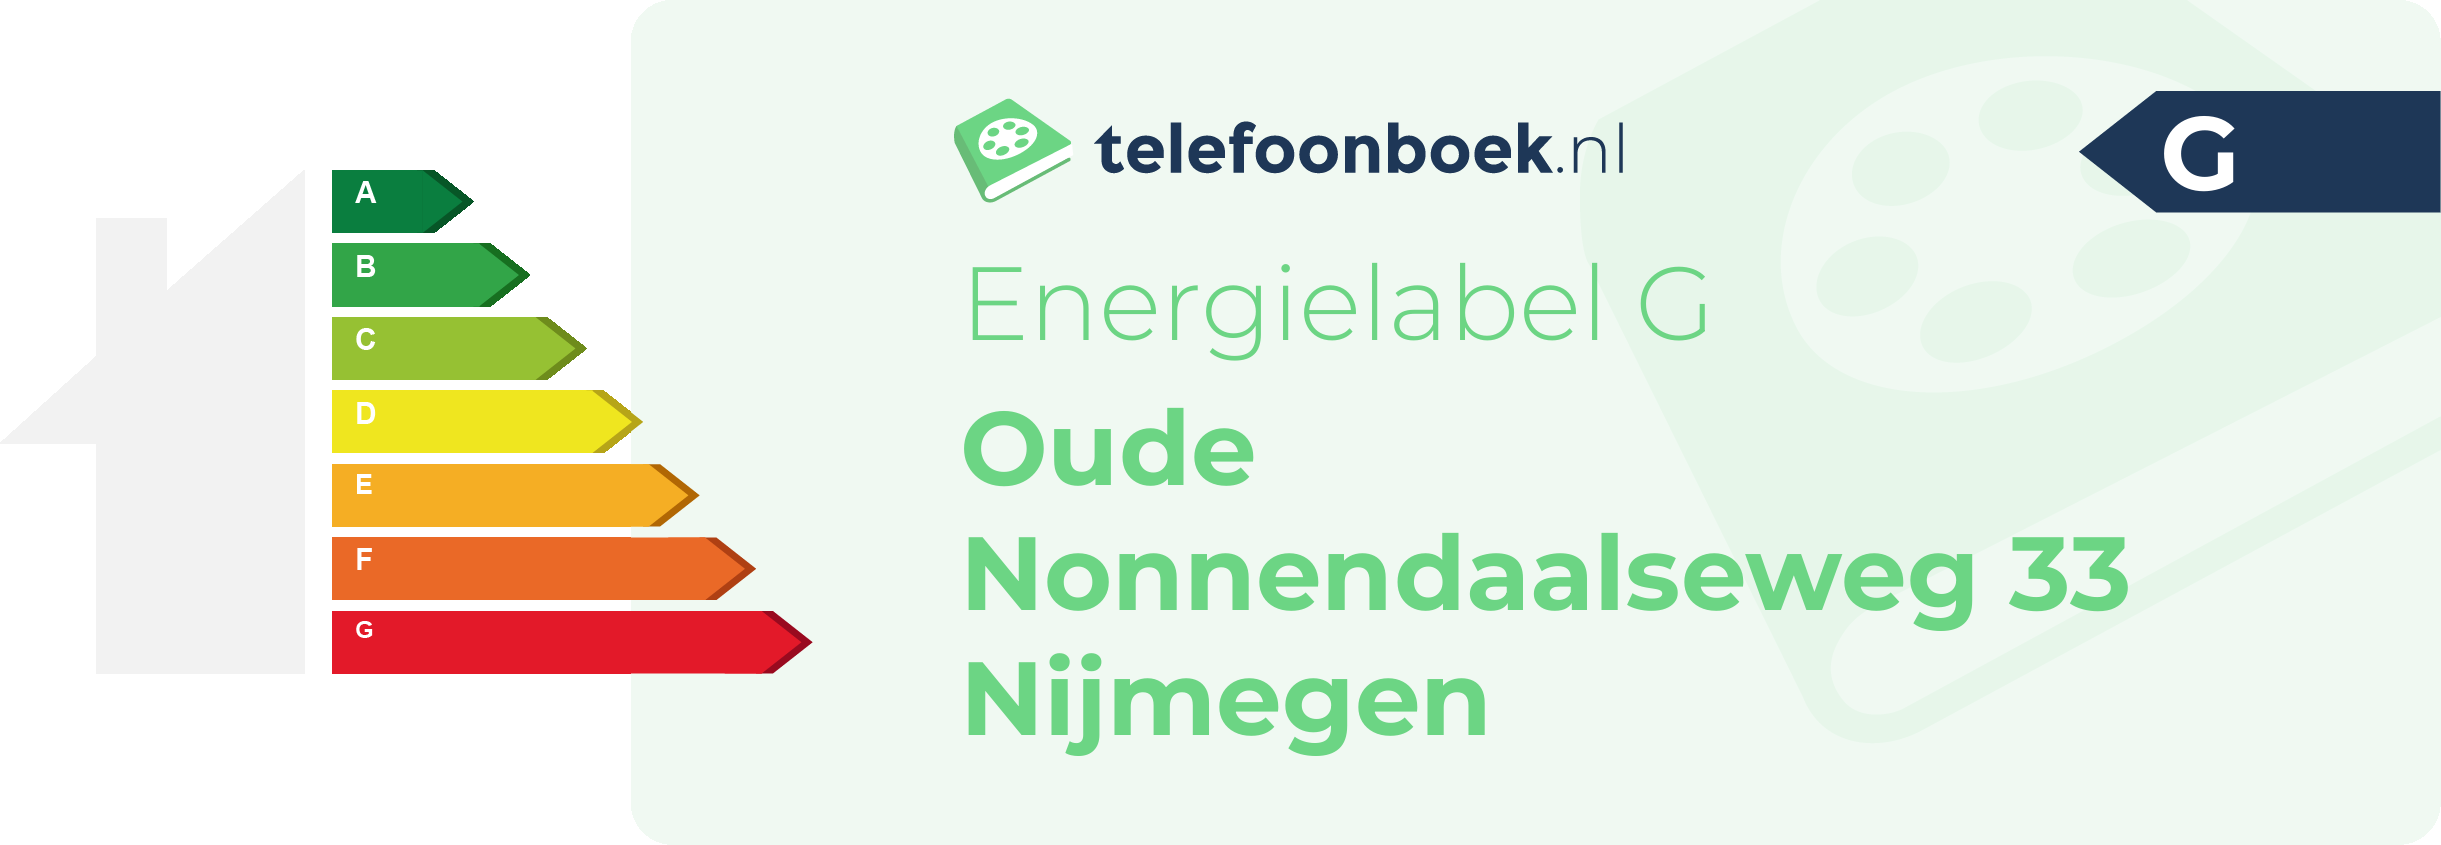 Energielabel Oude Nonnendaalseweg 33 Nijmegen